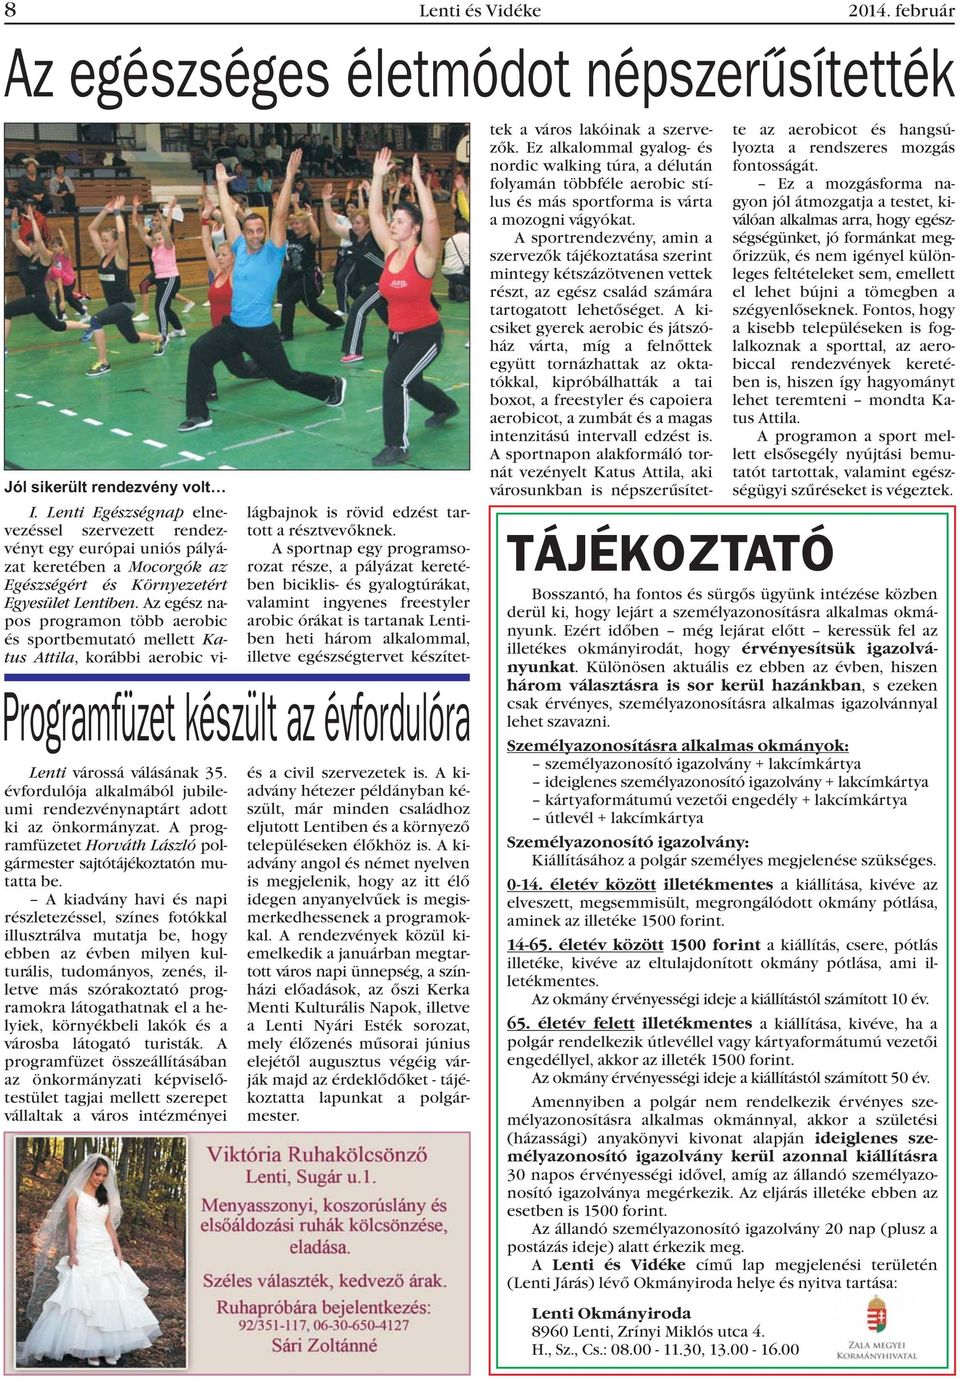 Azegészna- pos programon több aerobic és sportbemutató mellett Katus Attila, korábbi aerobic vi- Lenti várossá válásának 35.